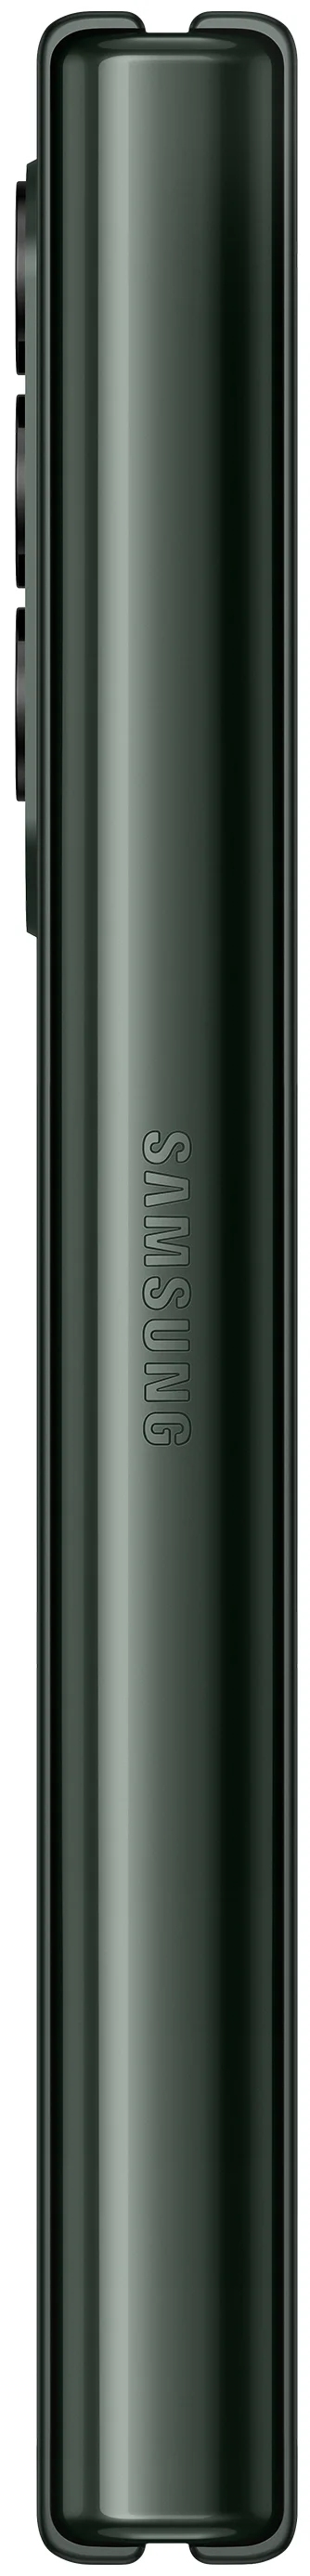 Смартфон Samsung Galaxy Z Fold3 256GB, зеленый - фото 7